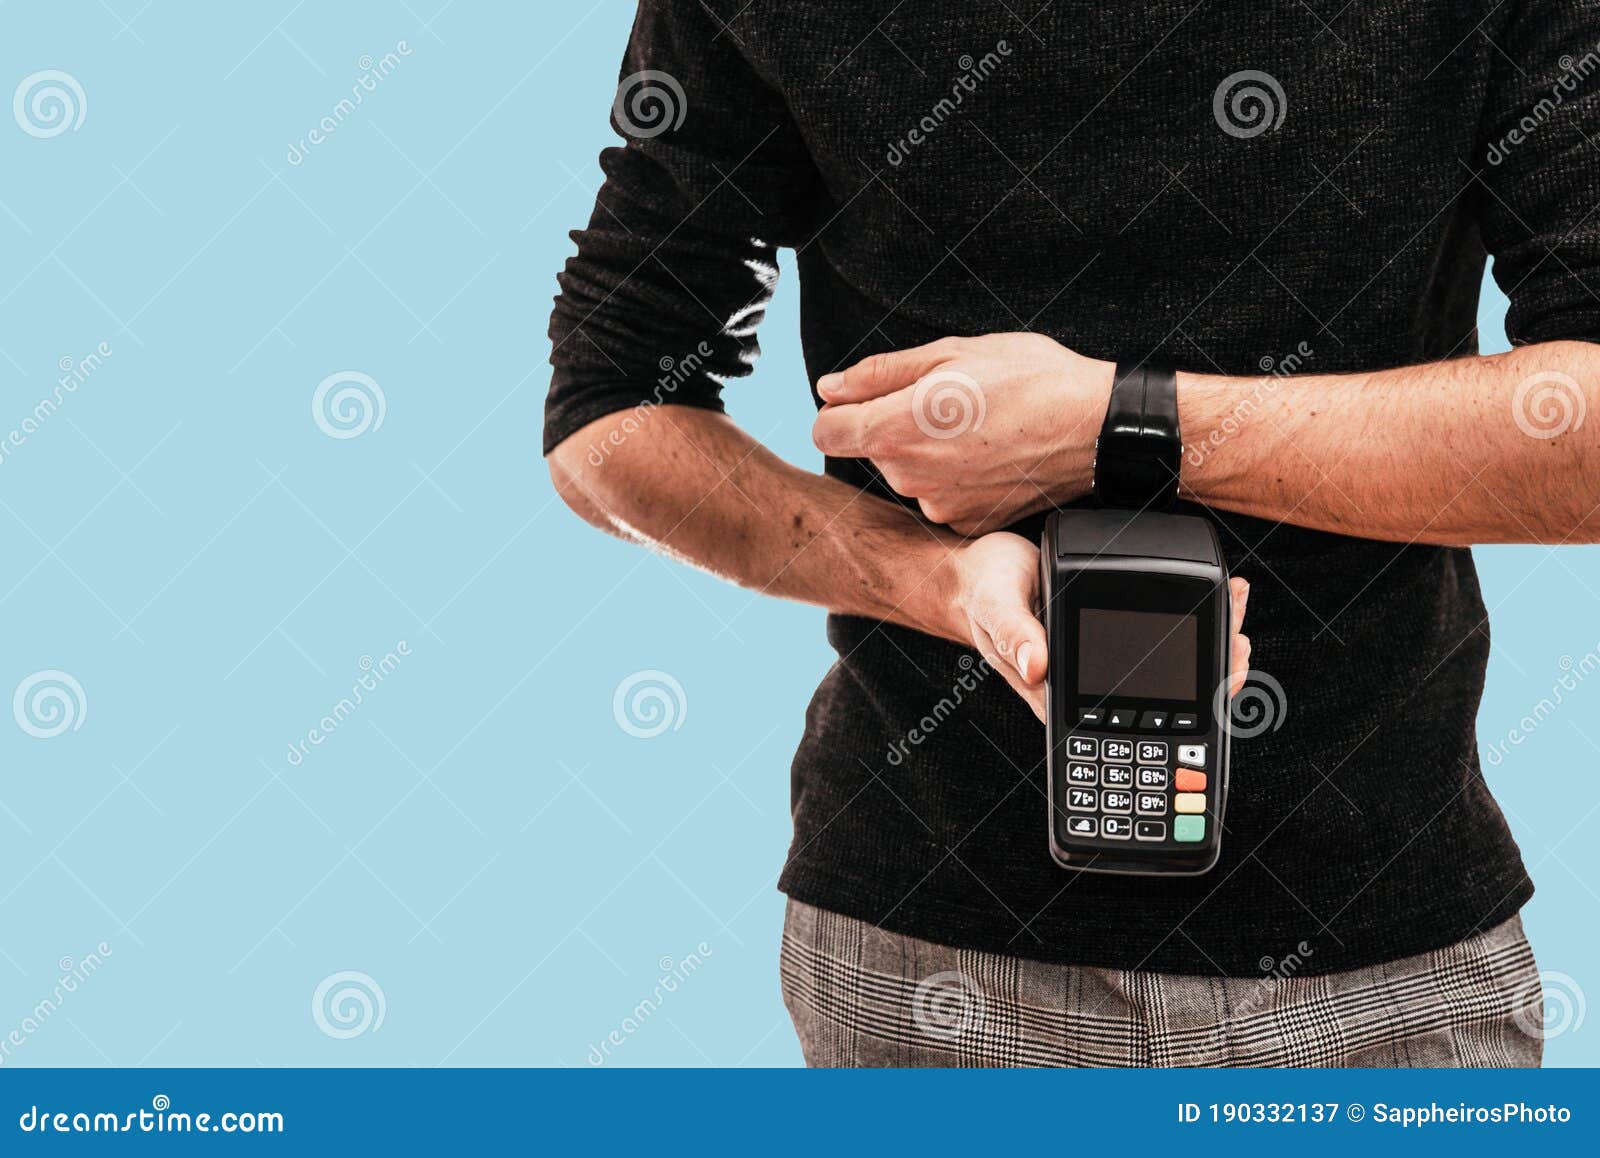 Hombre Sosteniendo Un Terminal De Post Y Usando Reloj Inteligente Para Pagar.  Concepto De Tecnología Nfc Imagen de archivo - Imagen de internet, paga:  190332137